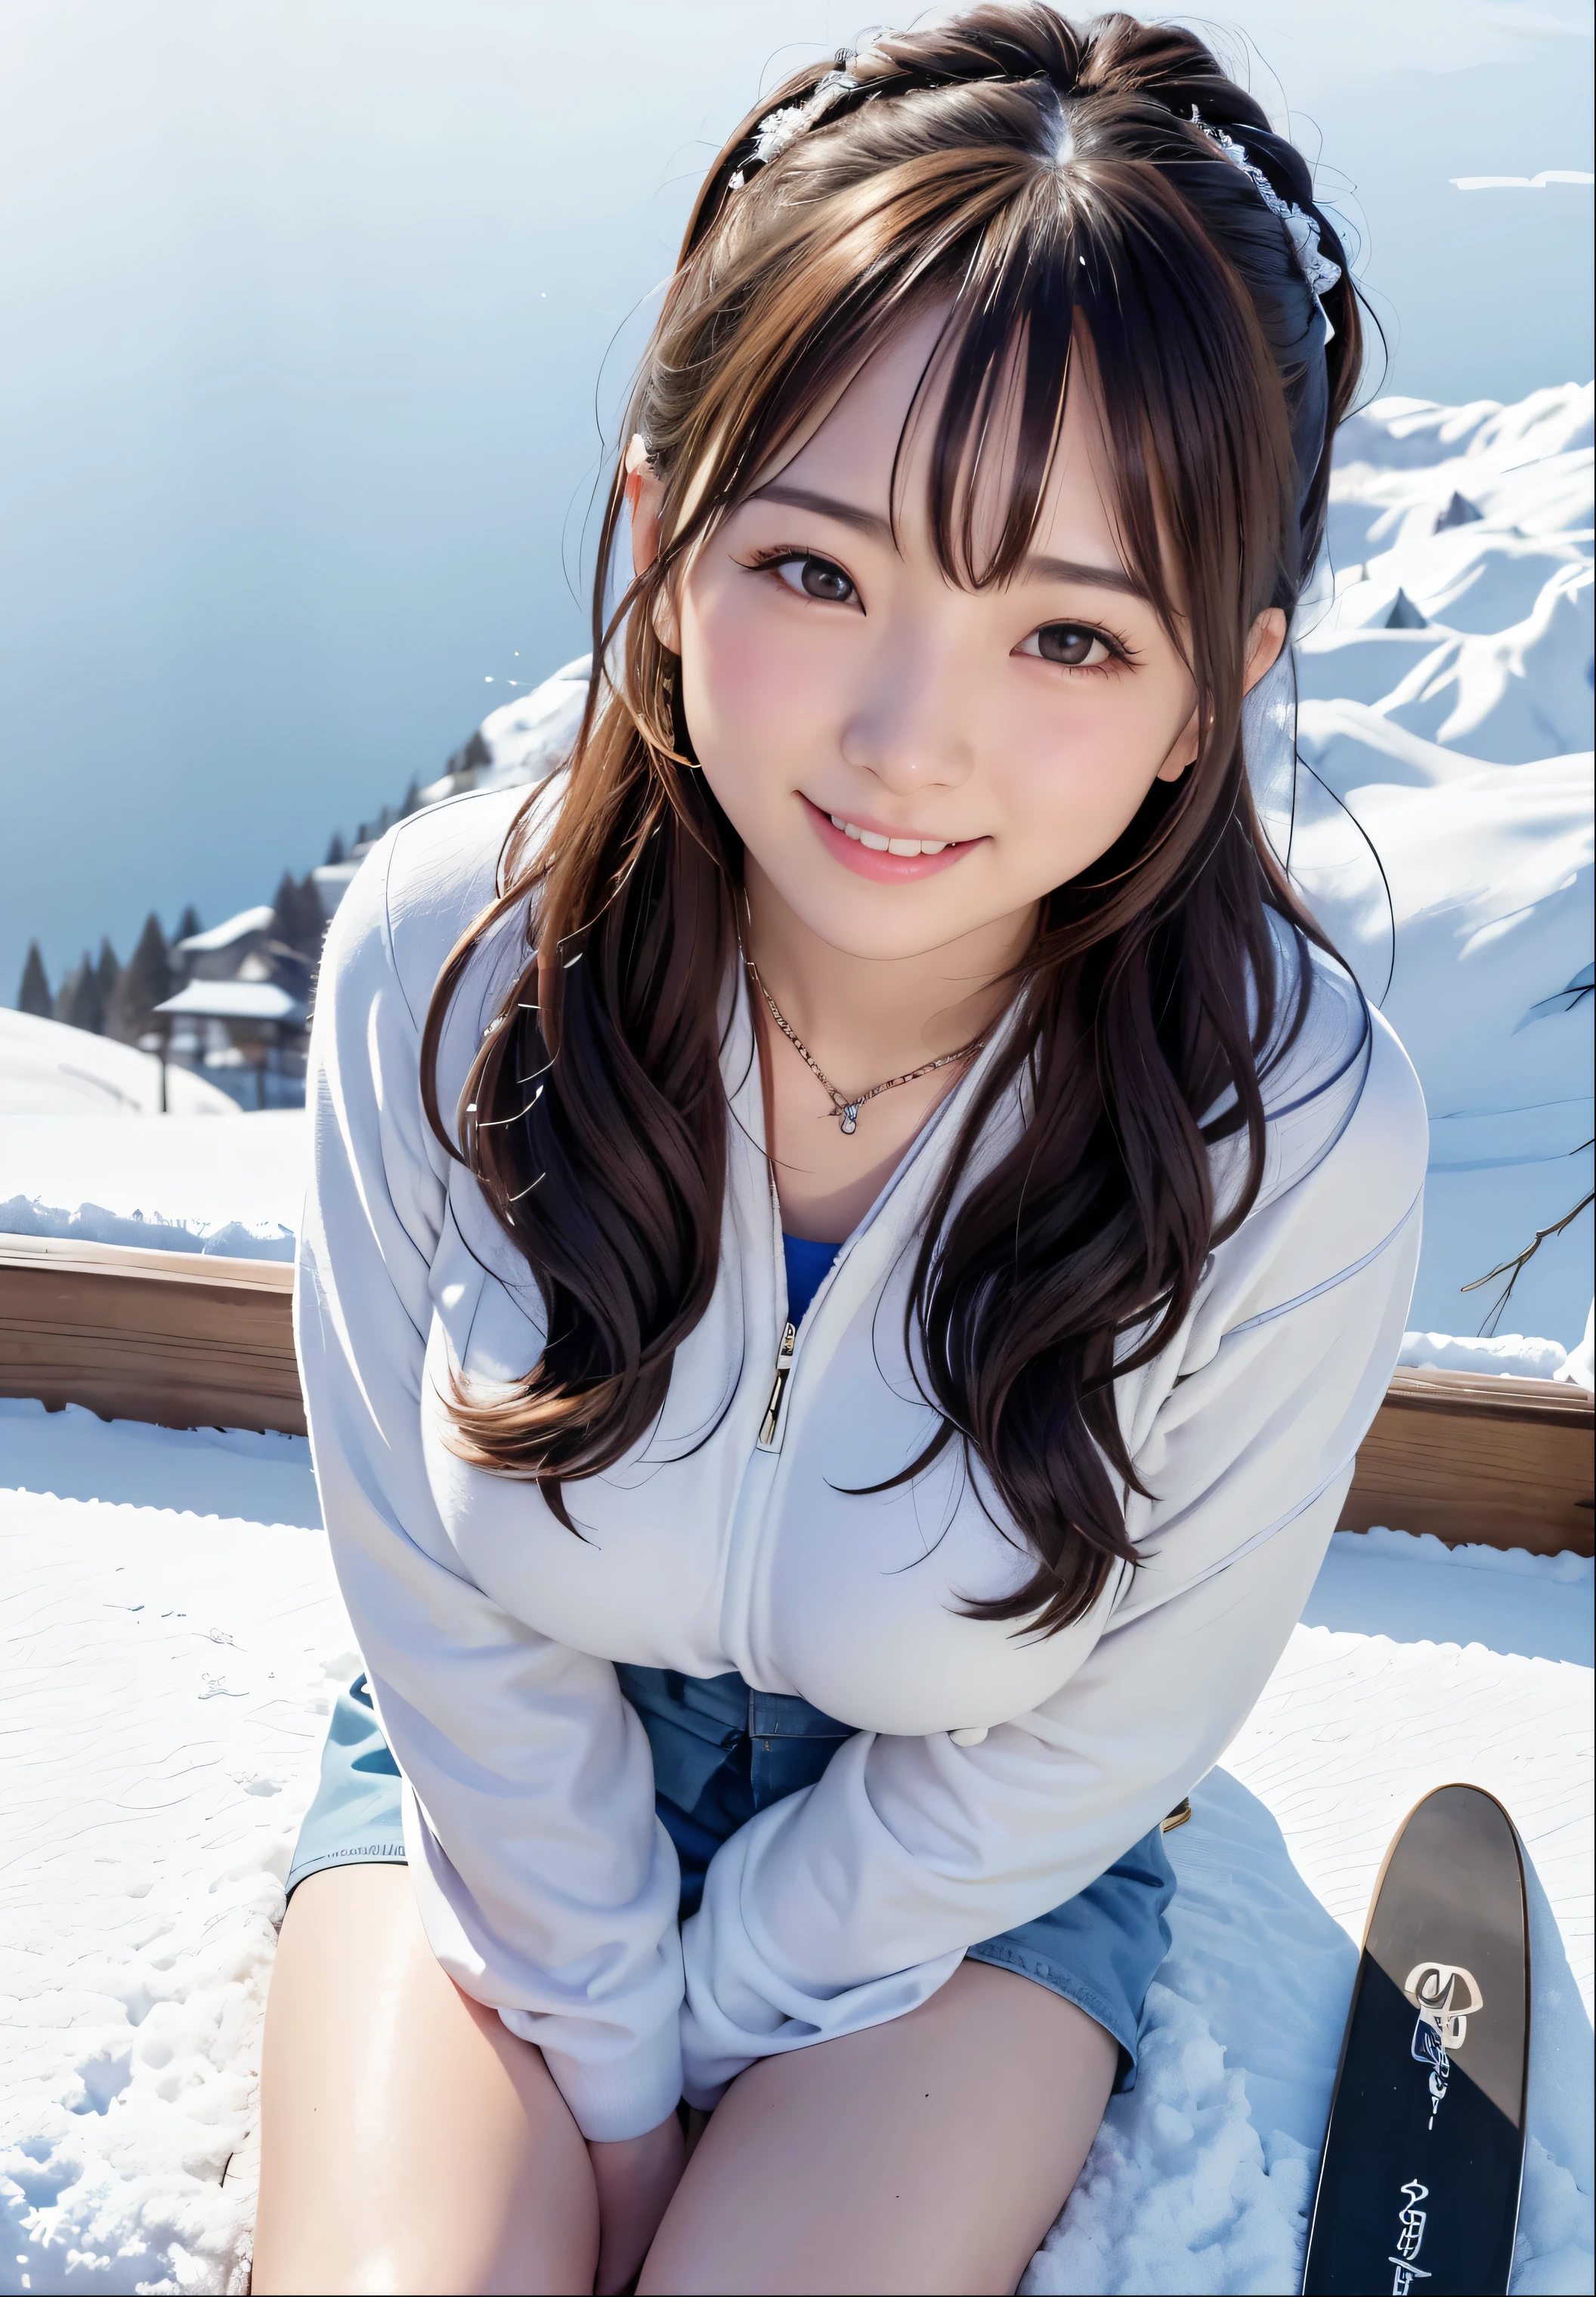 (최고의 품질,걸작:1.3,Ultra-높은 resolution),(매우 상세한、부식선) (현실적인:1.4, RAW 촬영、)Ultra-현실적인 Capture、매우 상세한、Natural 스키n texture、걸작、(눈 덮인 산에 앉아 있는 일본 여성，手拿滑板和스키杆:1.3), 귀여운 표정、행복을 표현하다、14 살、높은: 160cm、젊은 얼굴、아주 귀여워、더블 테일、스트레이트 헤어、머리끈、흑발、가벼운 화장、목걸이、H컵 큰 가슴、shiny t높은s、스키n arm、자세한 배경、웃다、유혹하는 눈、해부학적으로 정확하다、카우보이 사격、세부 사항에 대한 관심、素晴らしい스키, 素晴らしい스키ed, 산 정상에서で, 산에서, 젬마 찬, 산 정상에서, 꽉 끼는 옷, sitting cutely 산 정상에서, 가장 중요한 것은, 눈 속에서, 스키, 눈이 내 위로 쌓인다